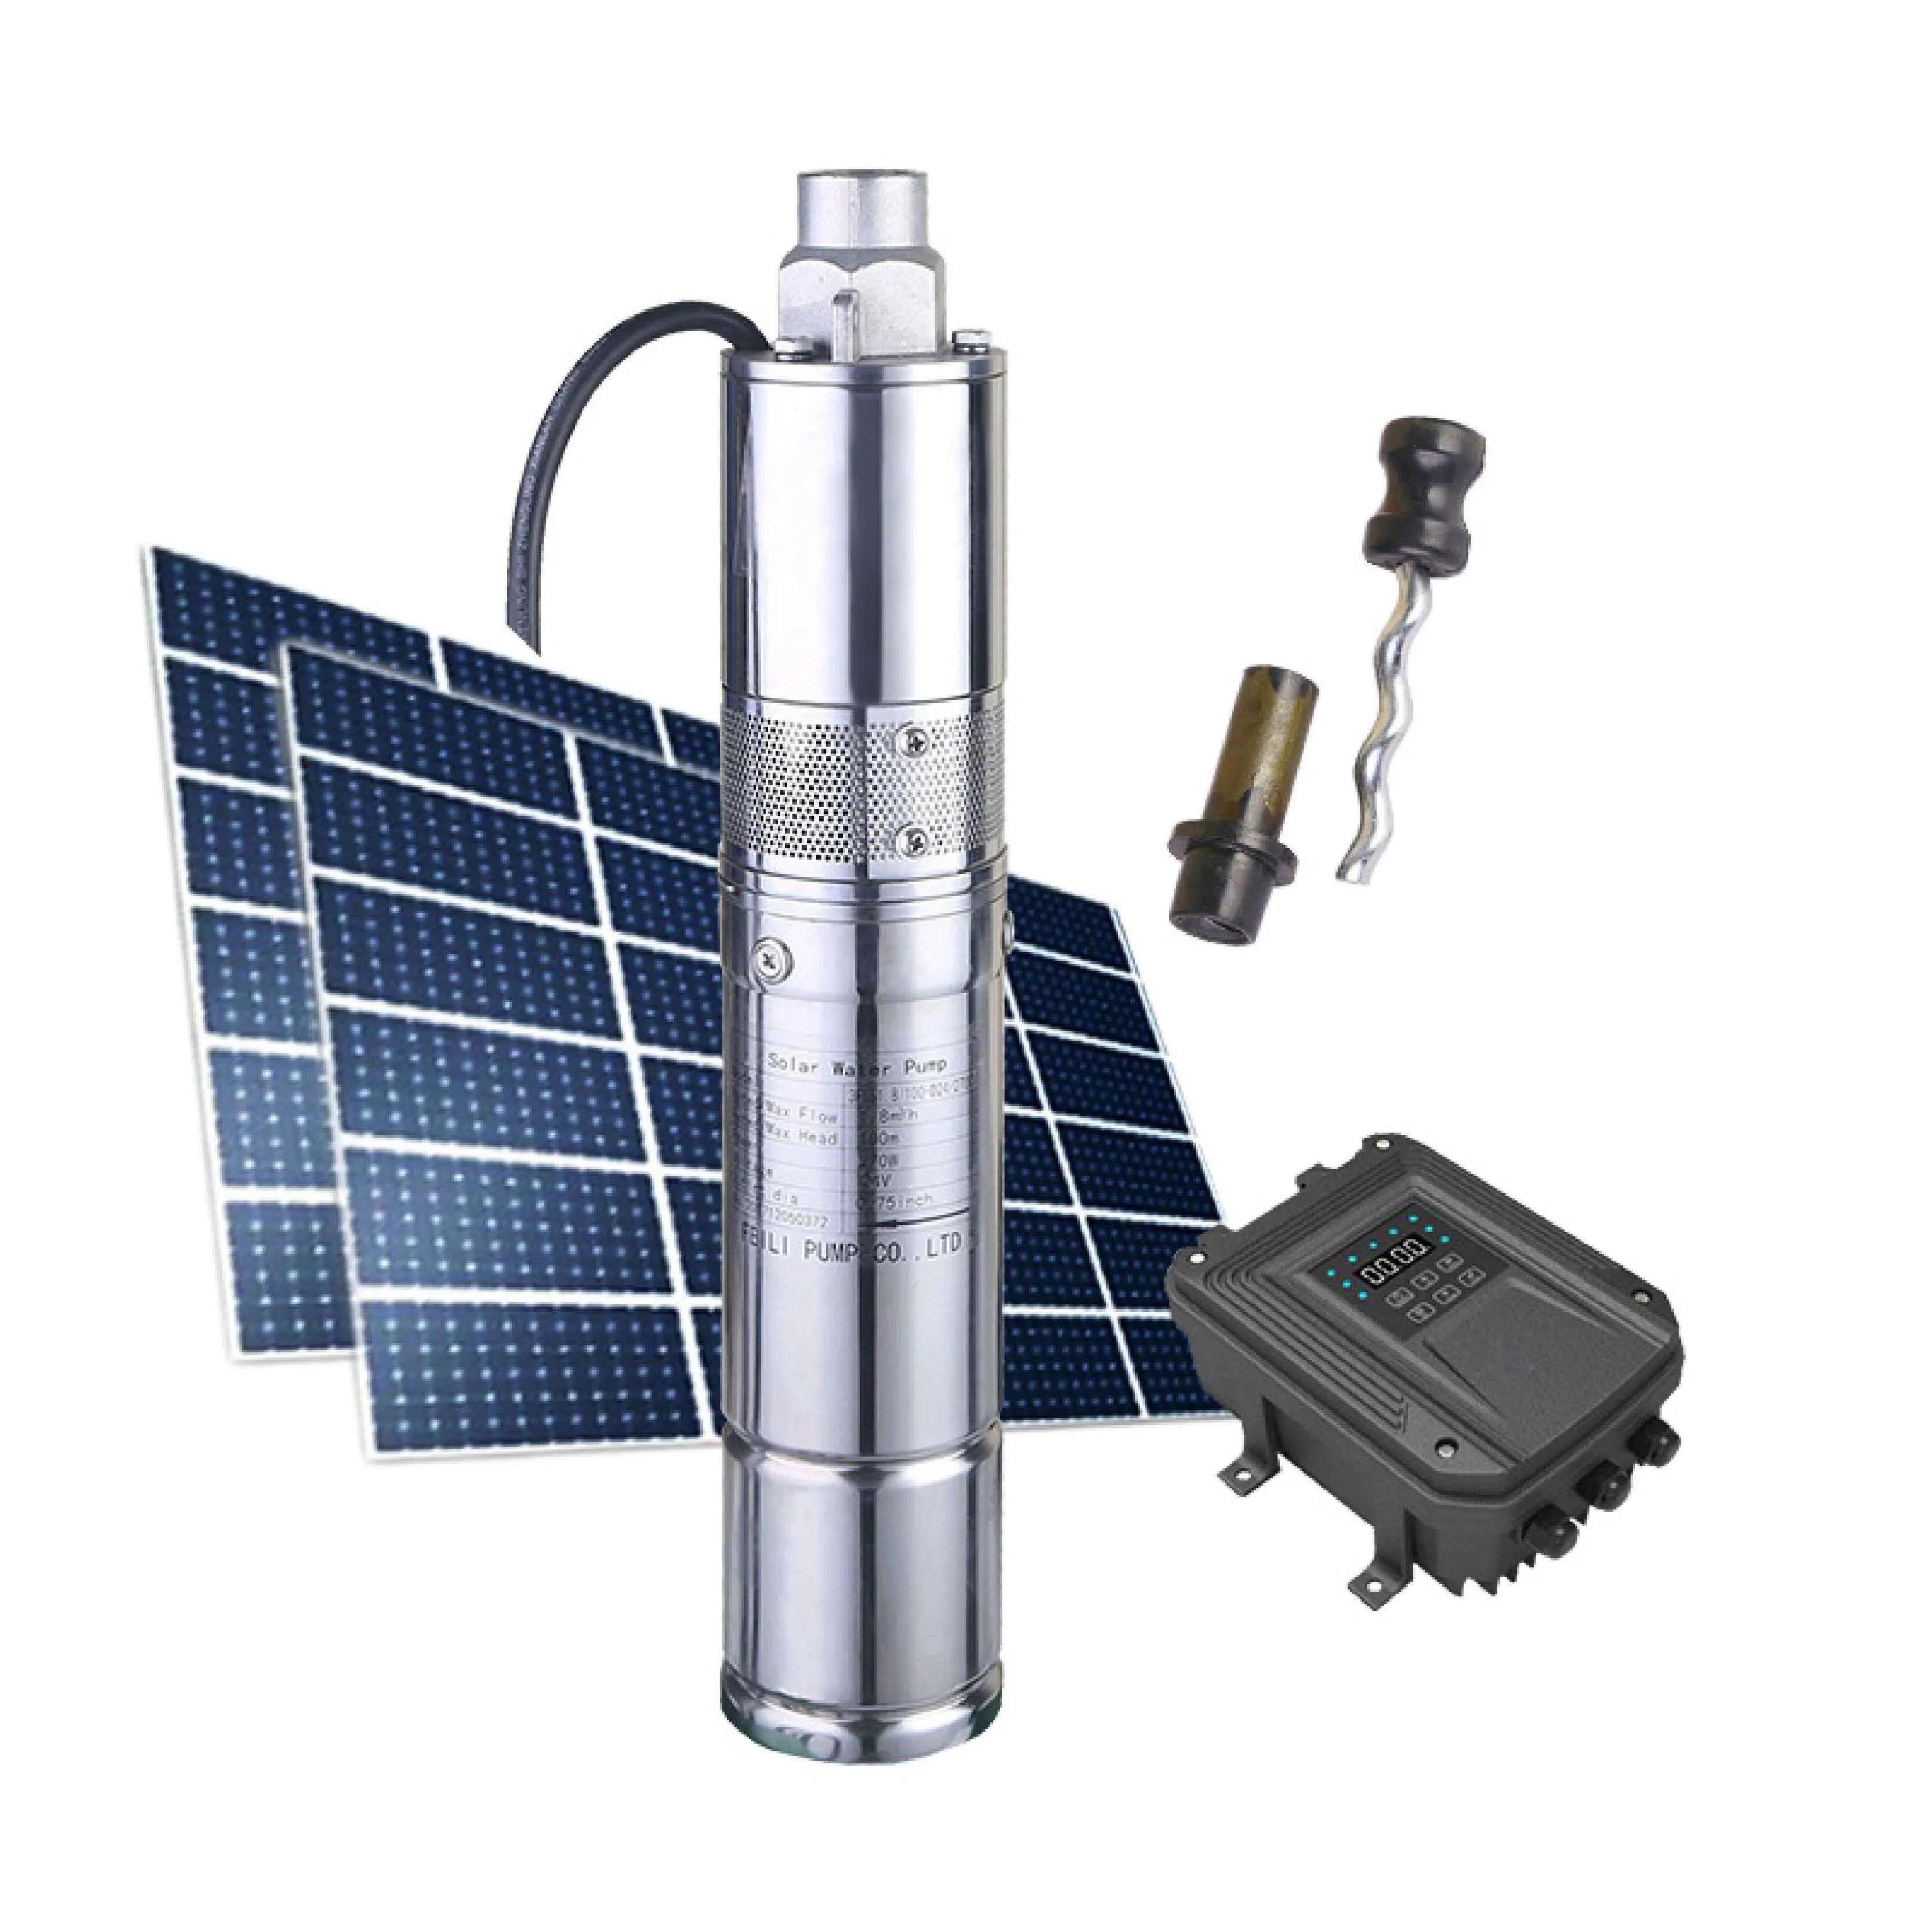 Pompa Air Energi Surya Bisa Ditenggelamkan, untuk Panel Surya, Penggunaan Pertanian Tugas Berat Dapat Diterima 0,5hp Kit Pompa Air Tenaga Surya untuk Sumur Dalam